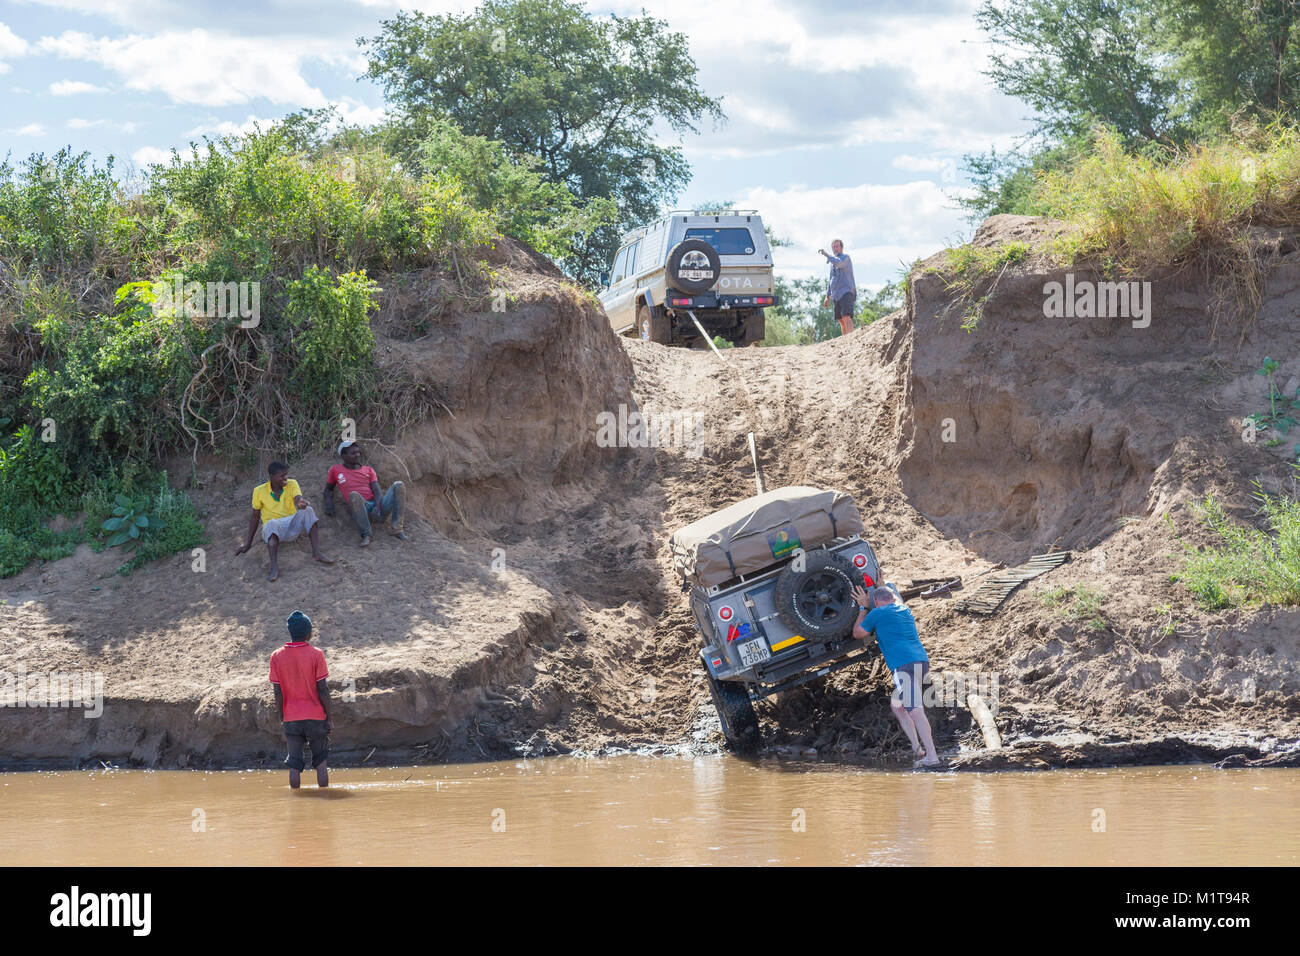 Landcrusier avec remorque de la difficulté à traverser la rivière Limpopo en gravissant une banque raide Banque D'Images